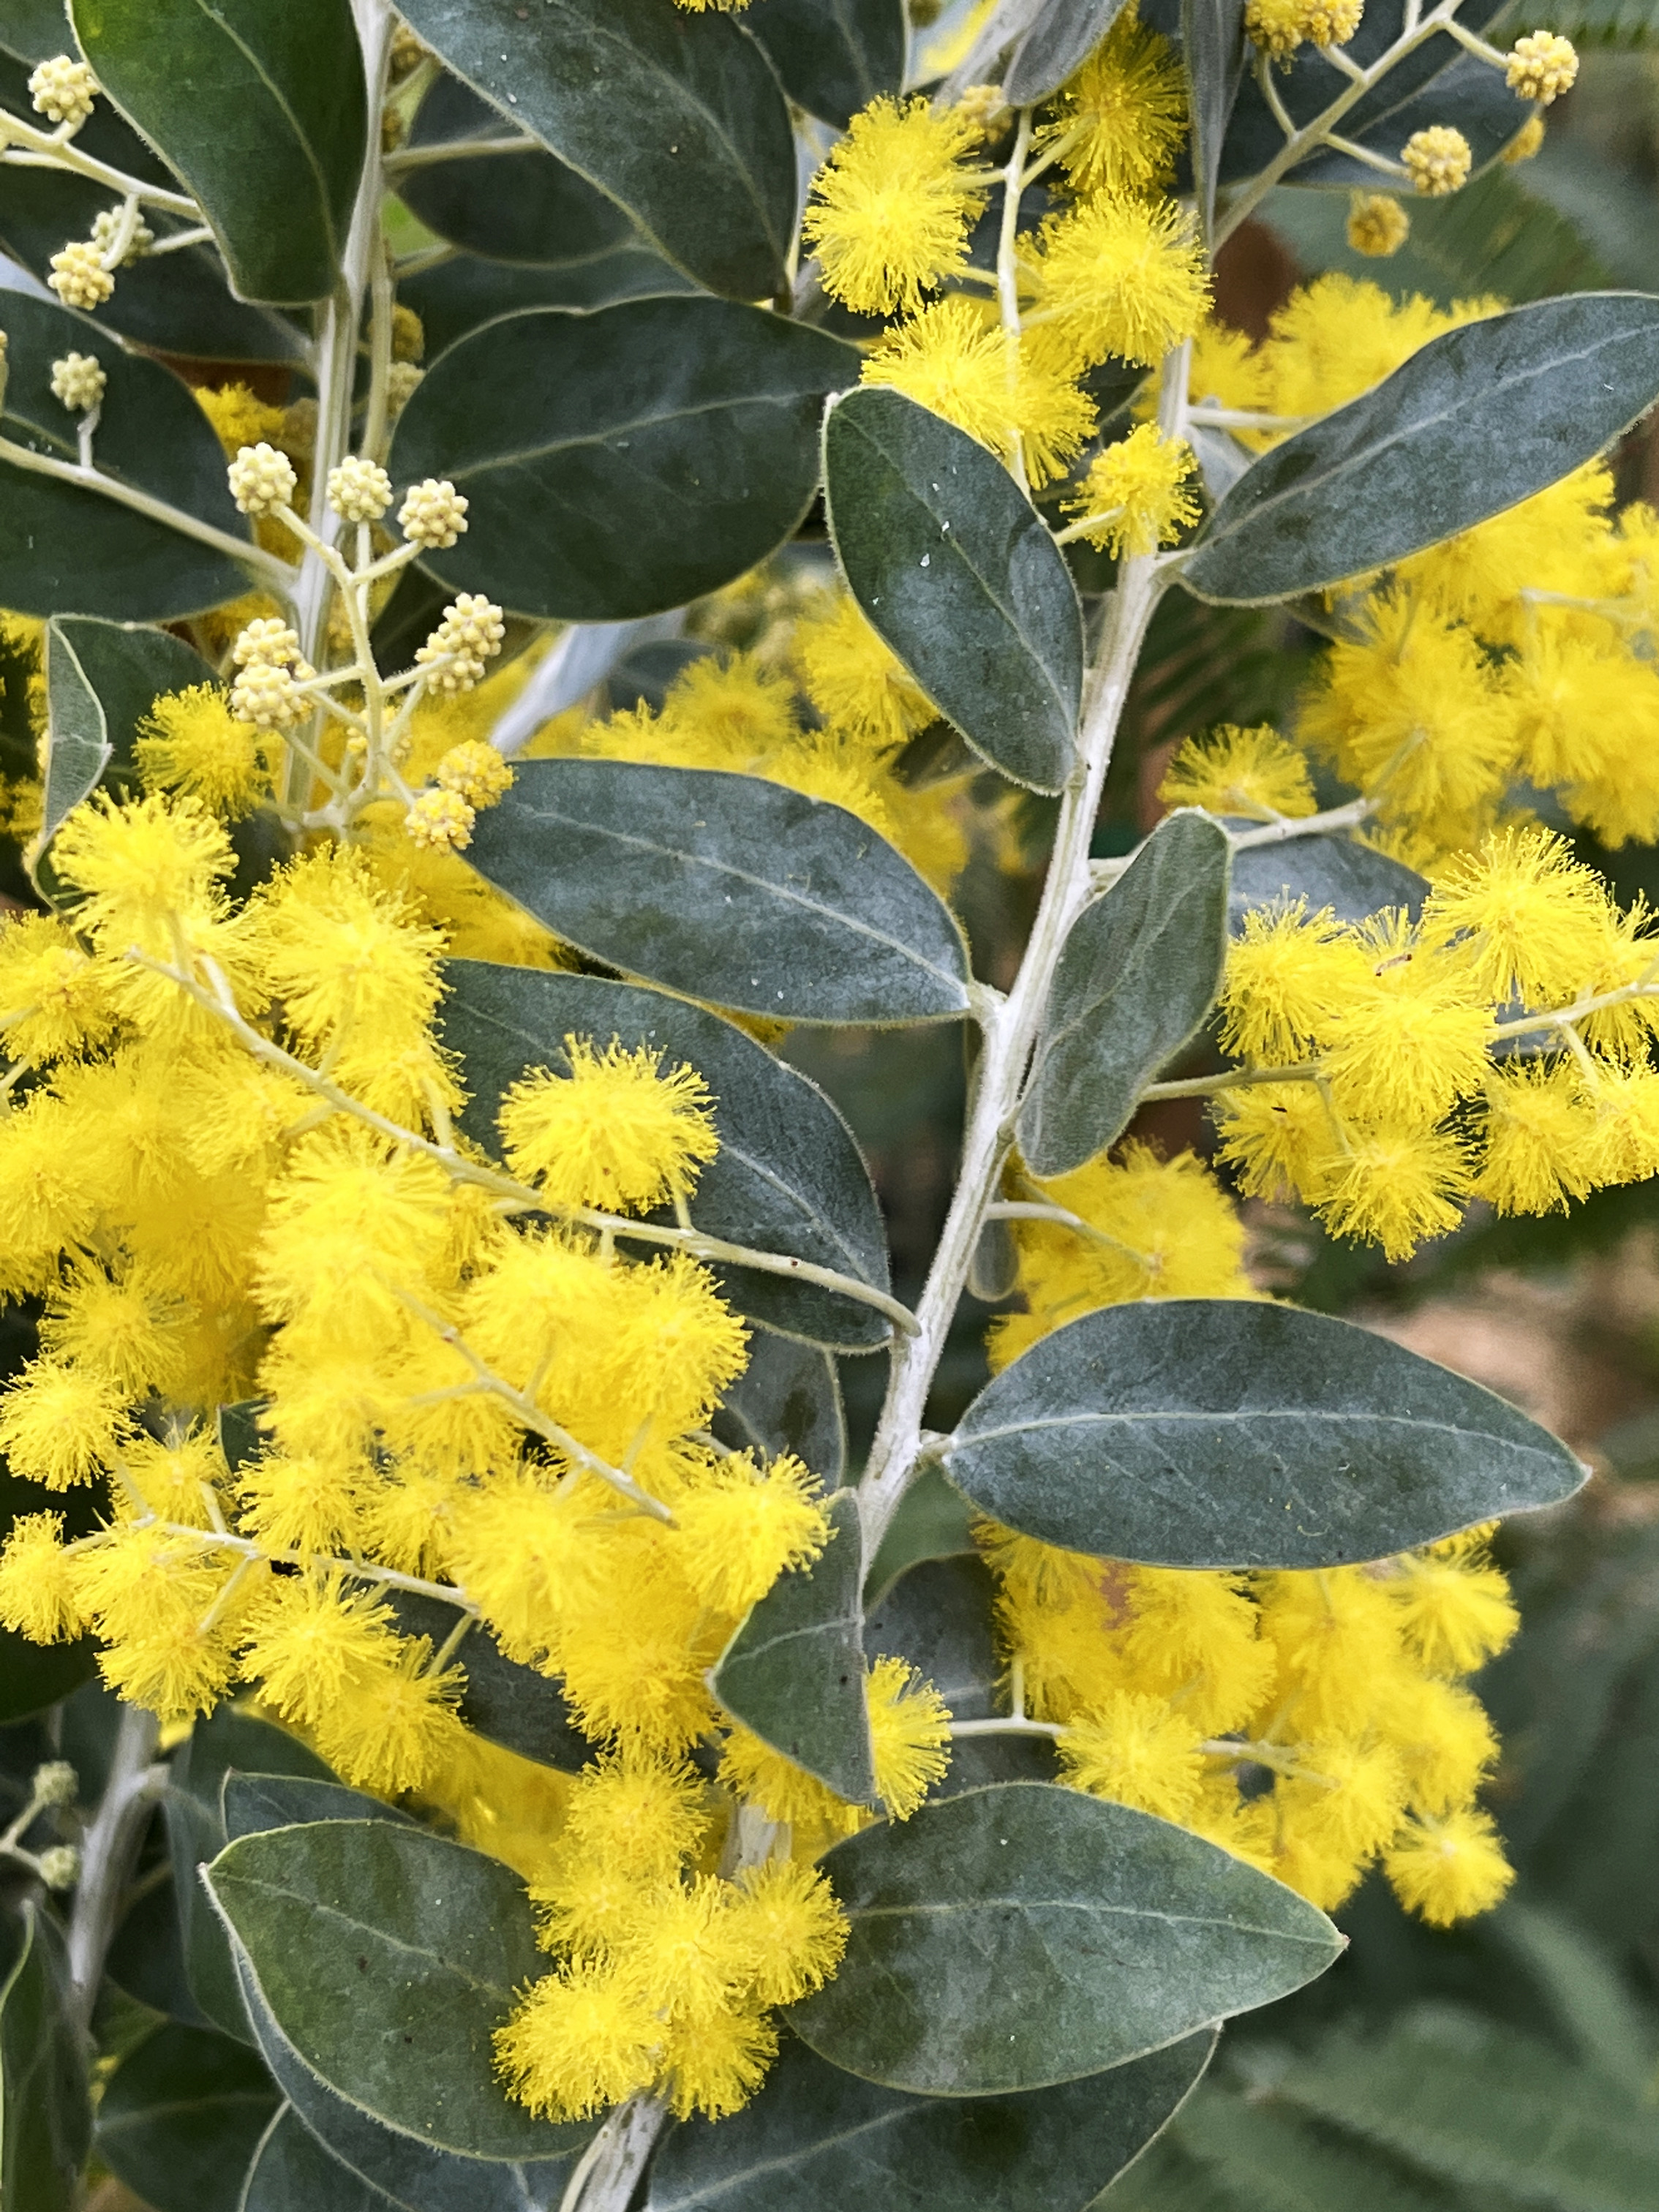 Acacia podalyriifolia syn. moutteana